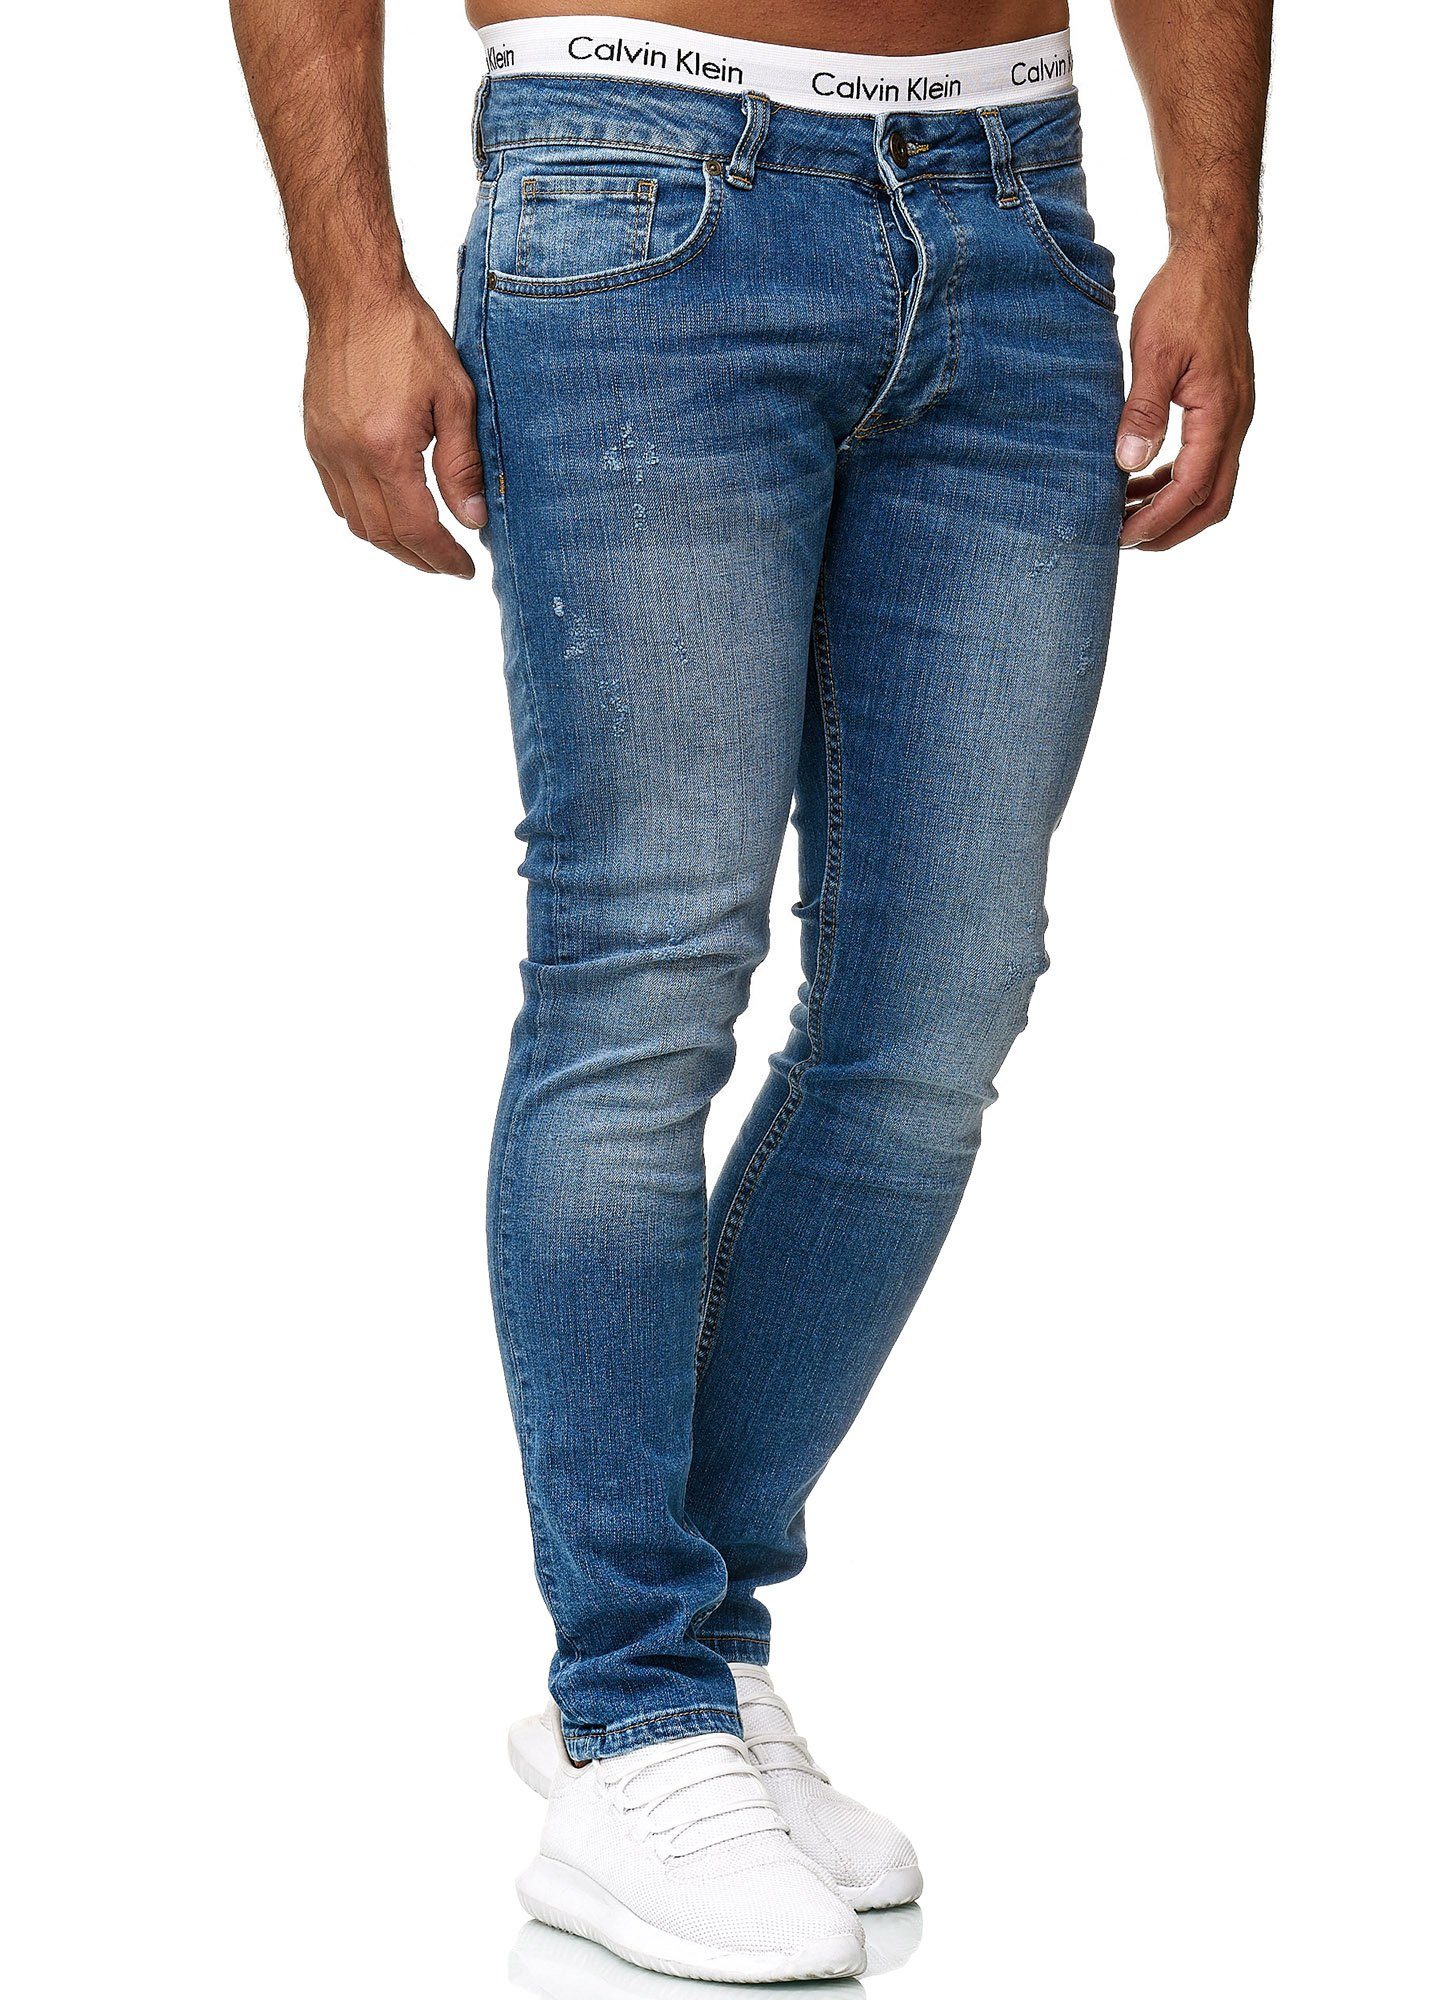 Code47 Skinny-fit-Jeans Code47 Designer Herren Jeans Hose Regular Skinny Fit Jeanshose Basic 601 Old Blue Used